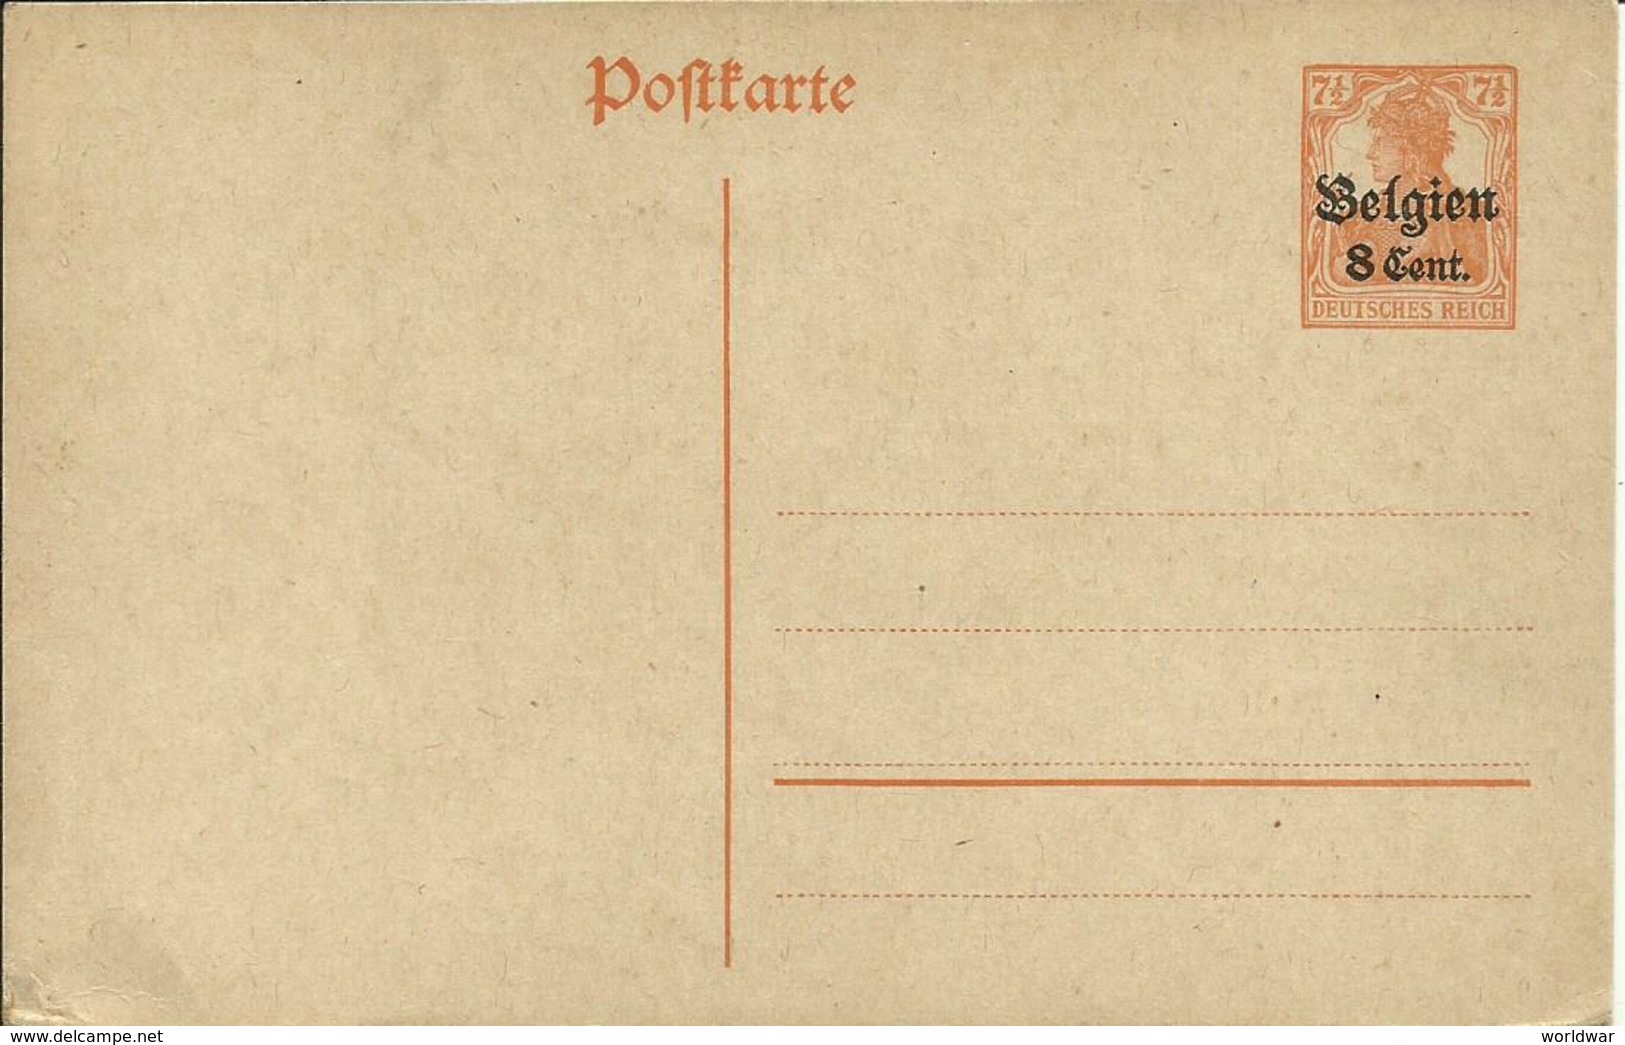 1917-18  Postkarte 8 Cent. Belgien - German Occupation